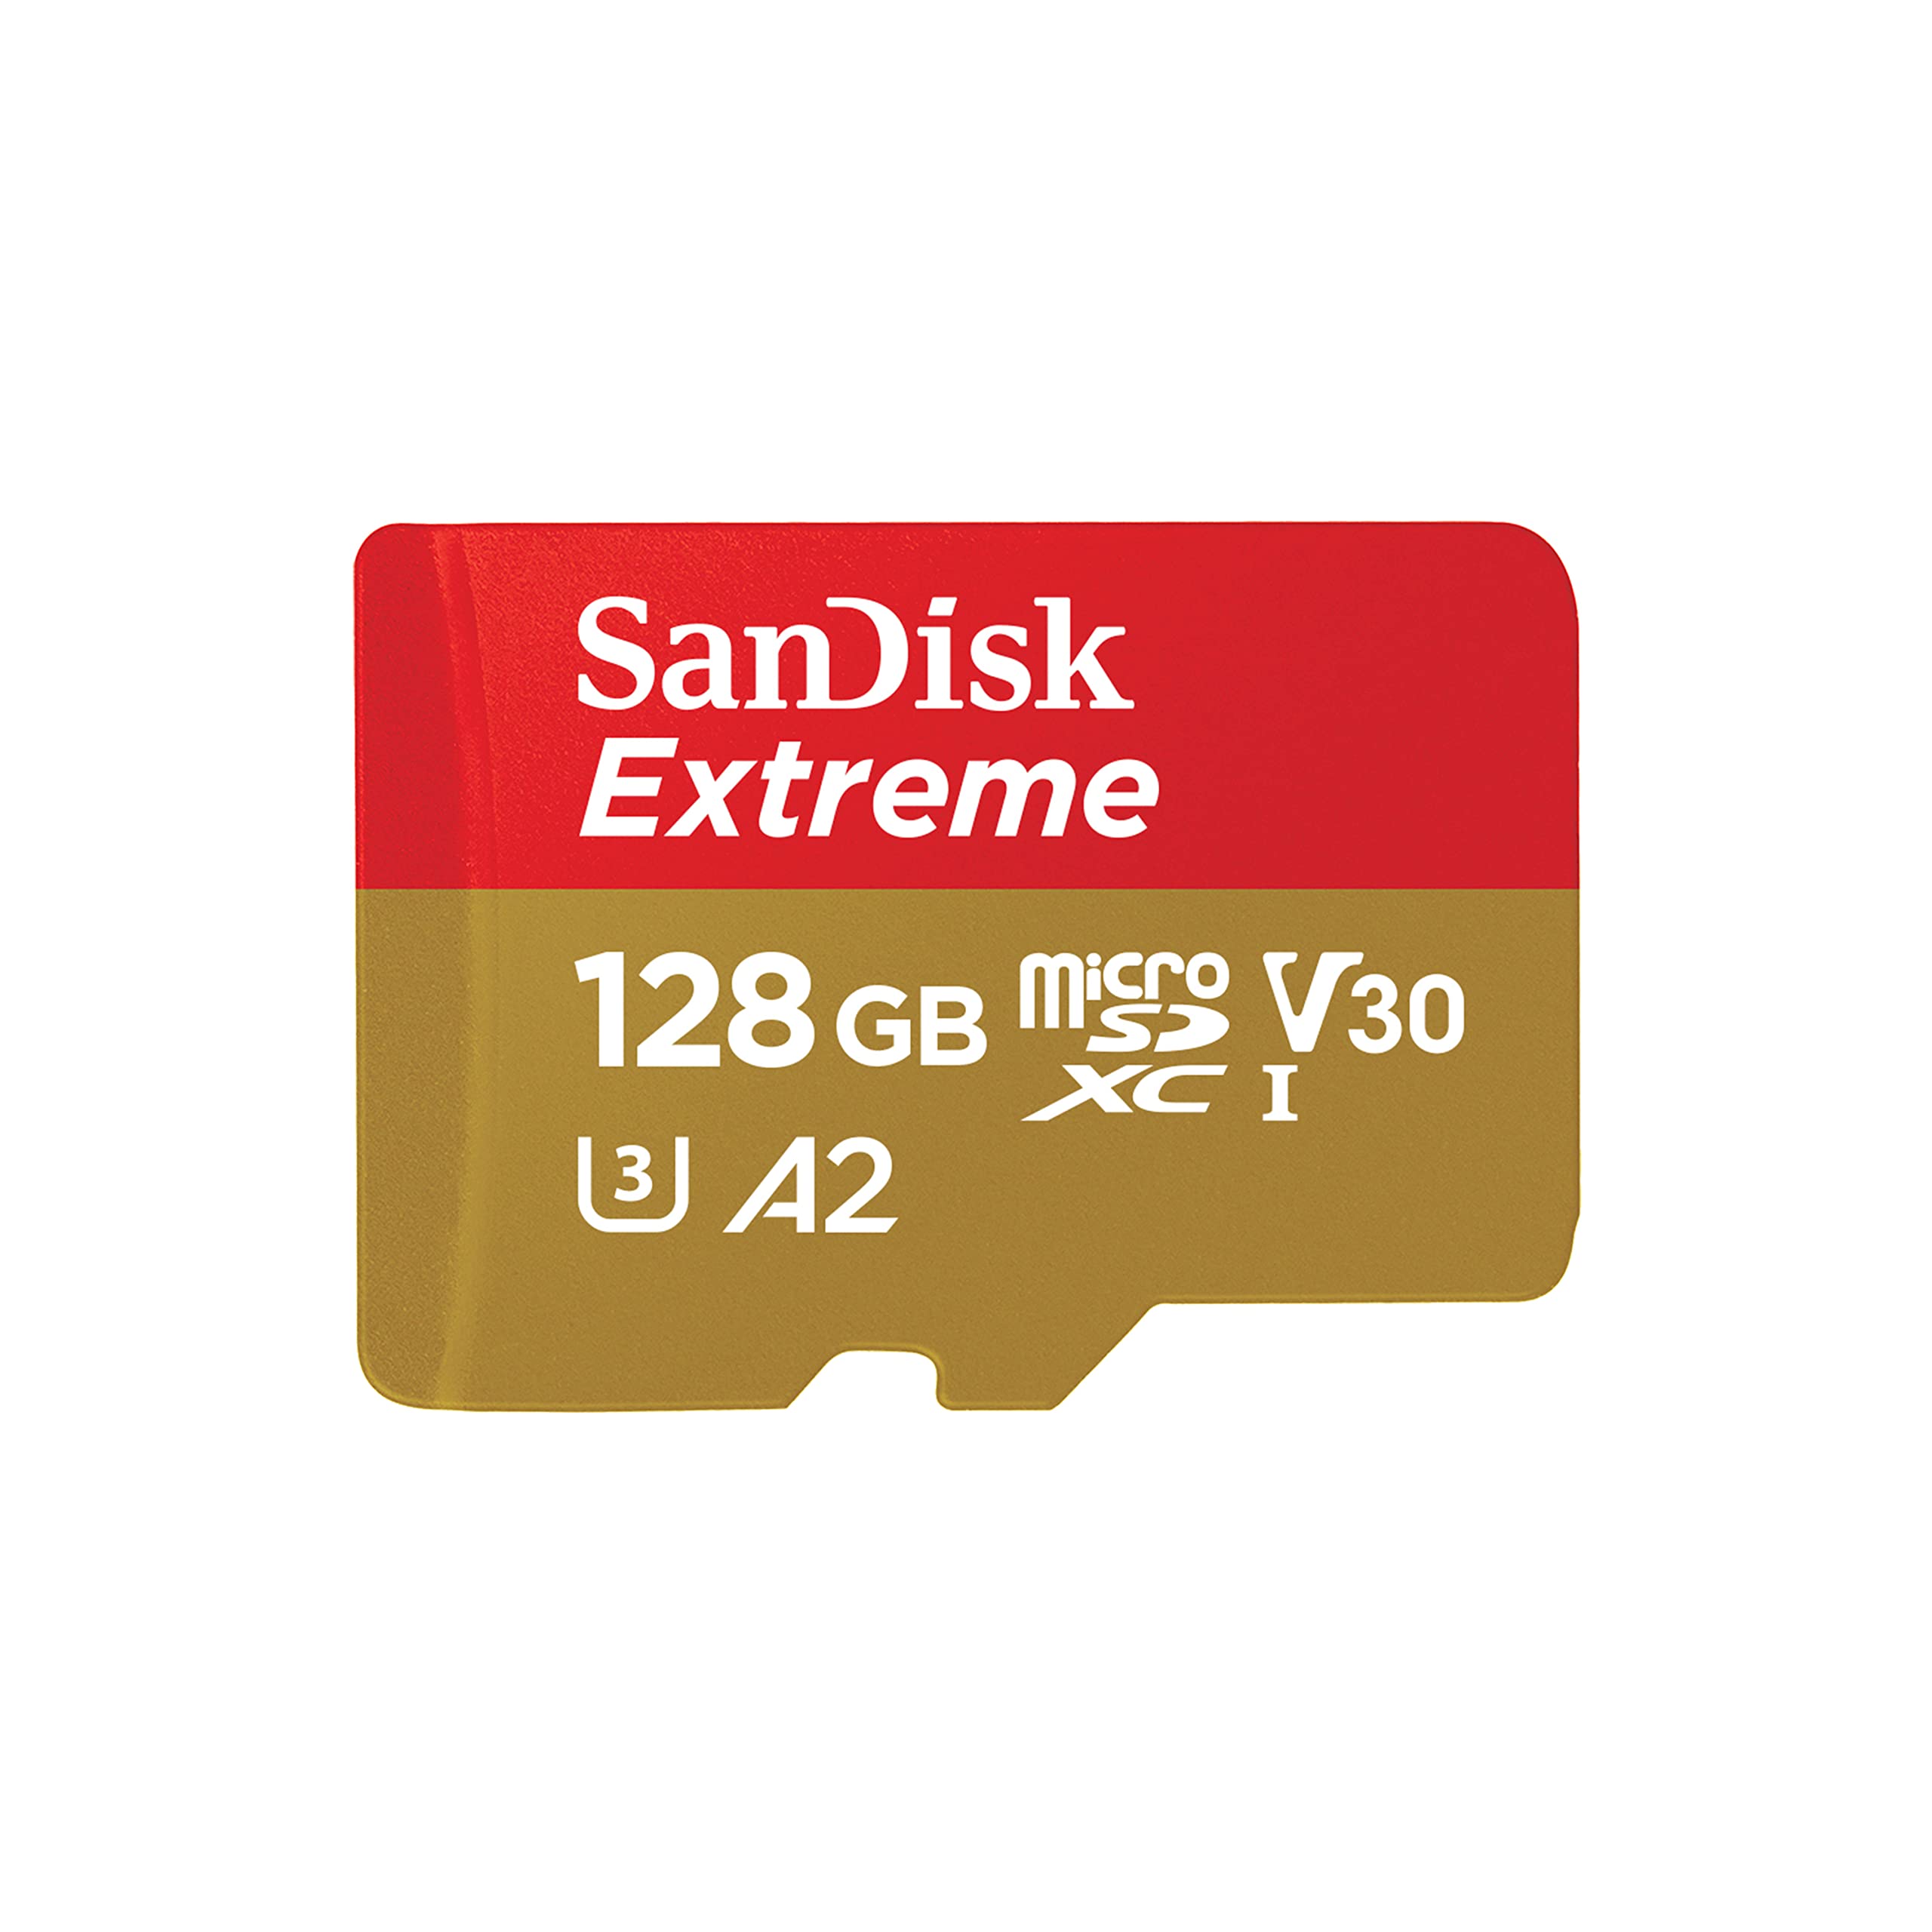 Extreme Microsdxc 128g Sd Adapt Sandisk Sdsqxaa 128g Gn6ma 619659188450